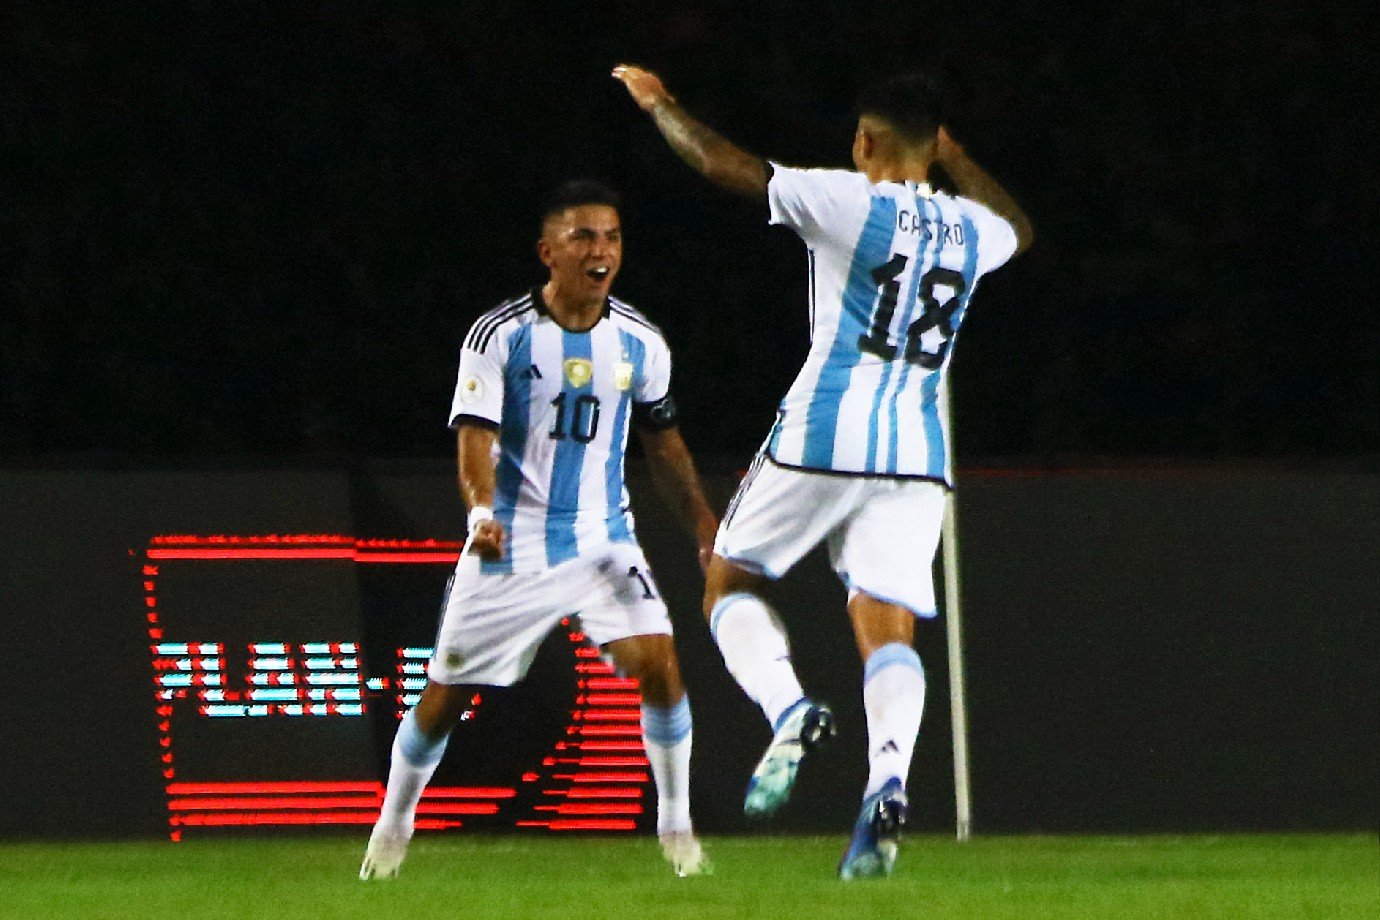 A Argentina é o maior campeão da Copa América, com 15 títulos desde 1921